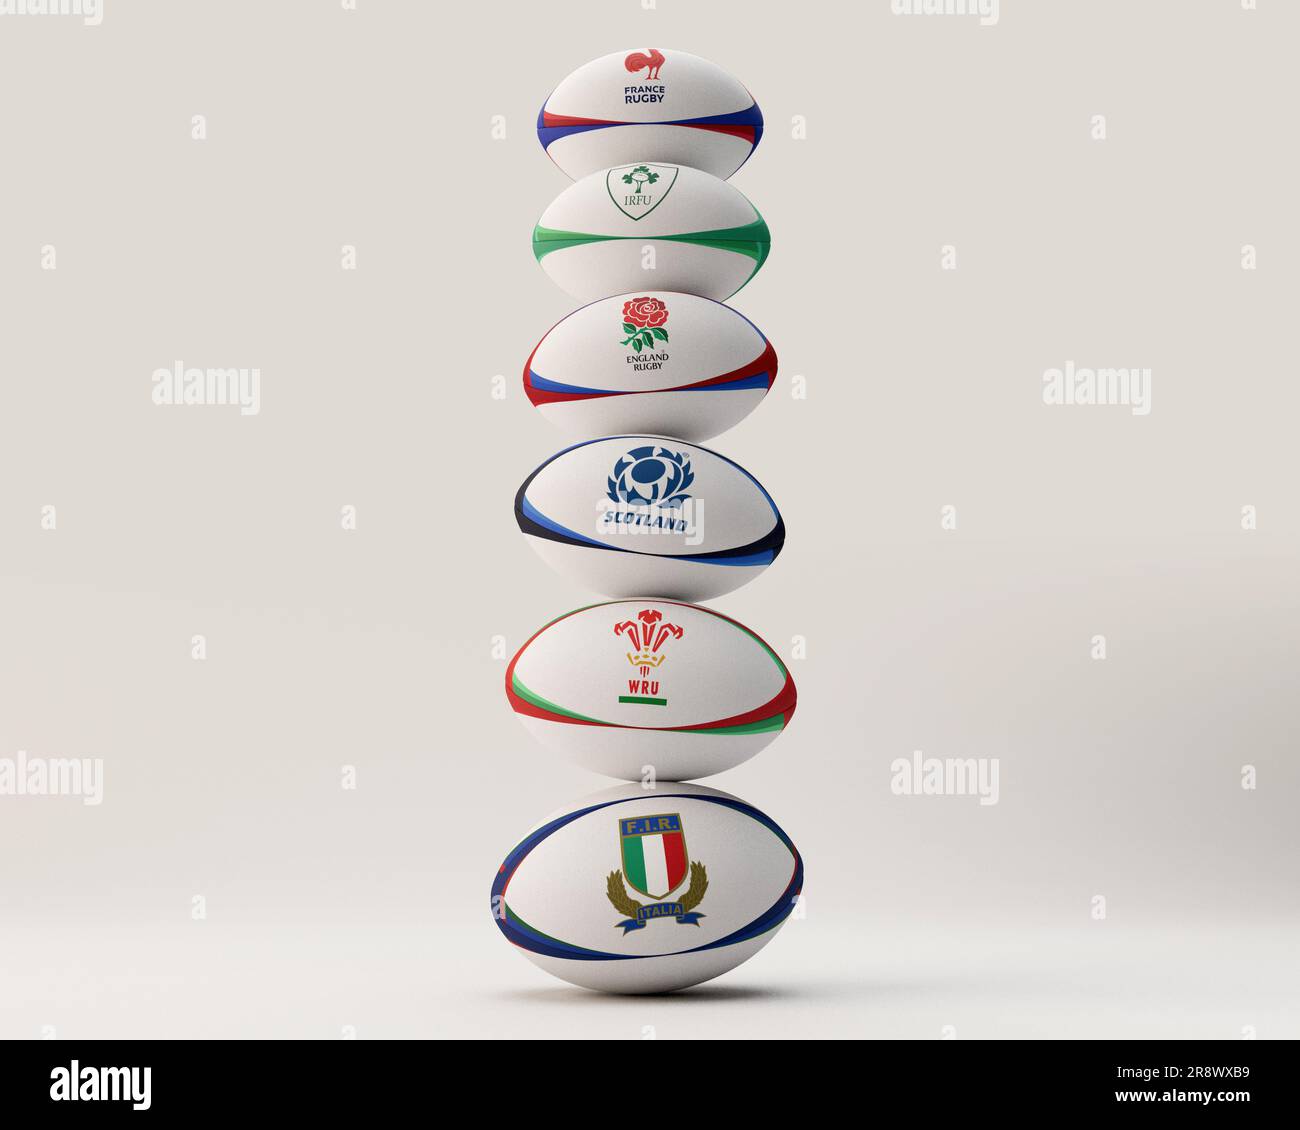 Un rendering 3D di una pila di palle da rugby generiche impresse con i loghi delle squadre partecipanti al Six Nations Championship Francia, Irlanda, Inghilterra, S. Foto Stock